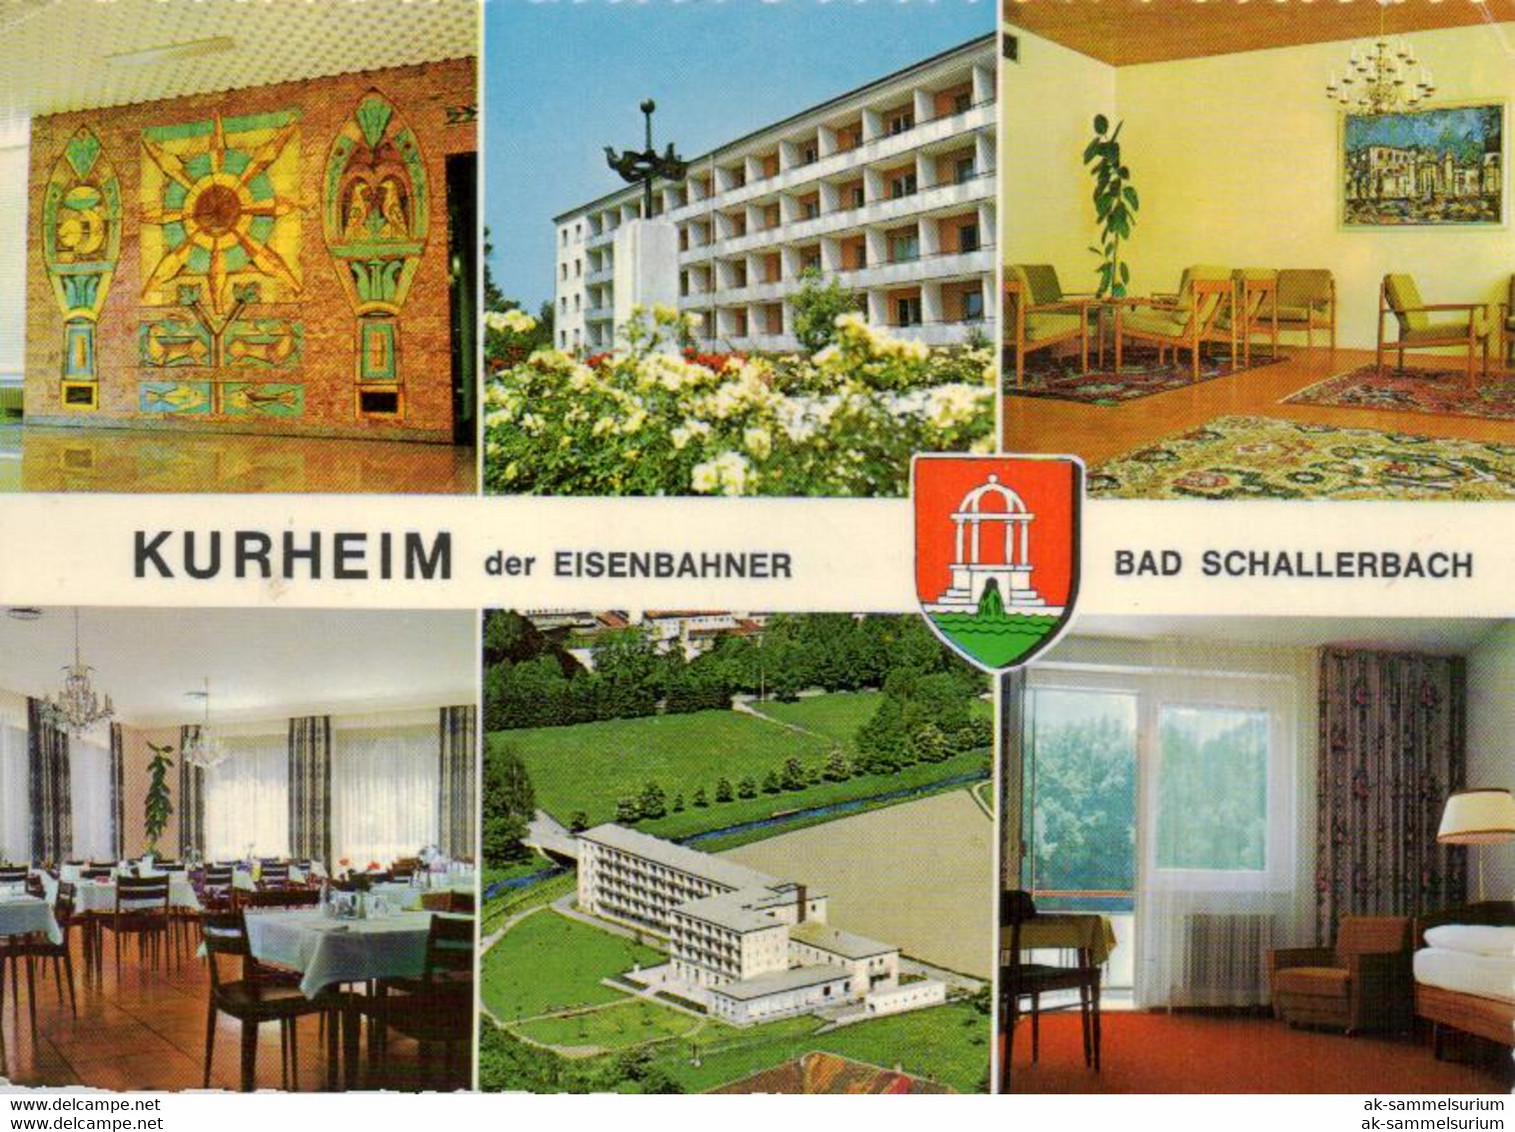 Bad Schallerbach (D-A353) - Bad Schallerbach